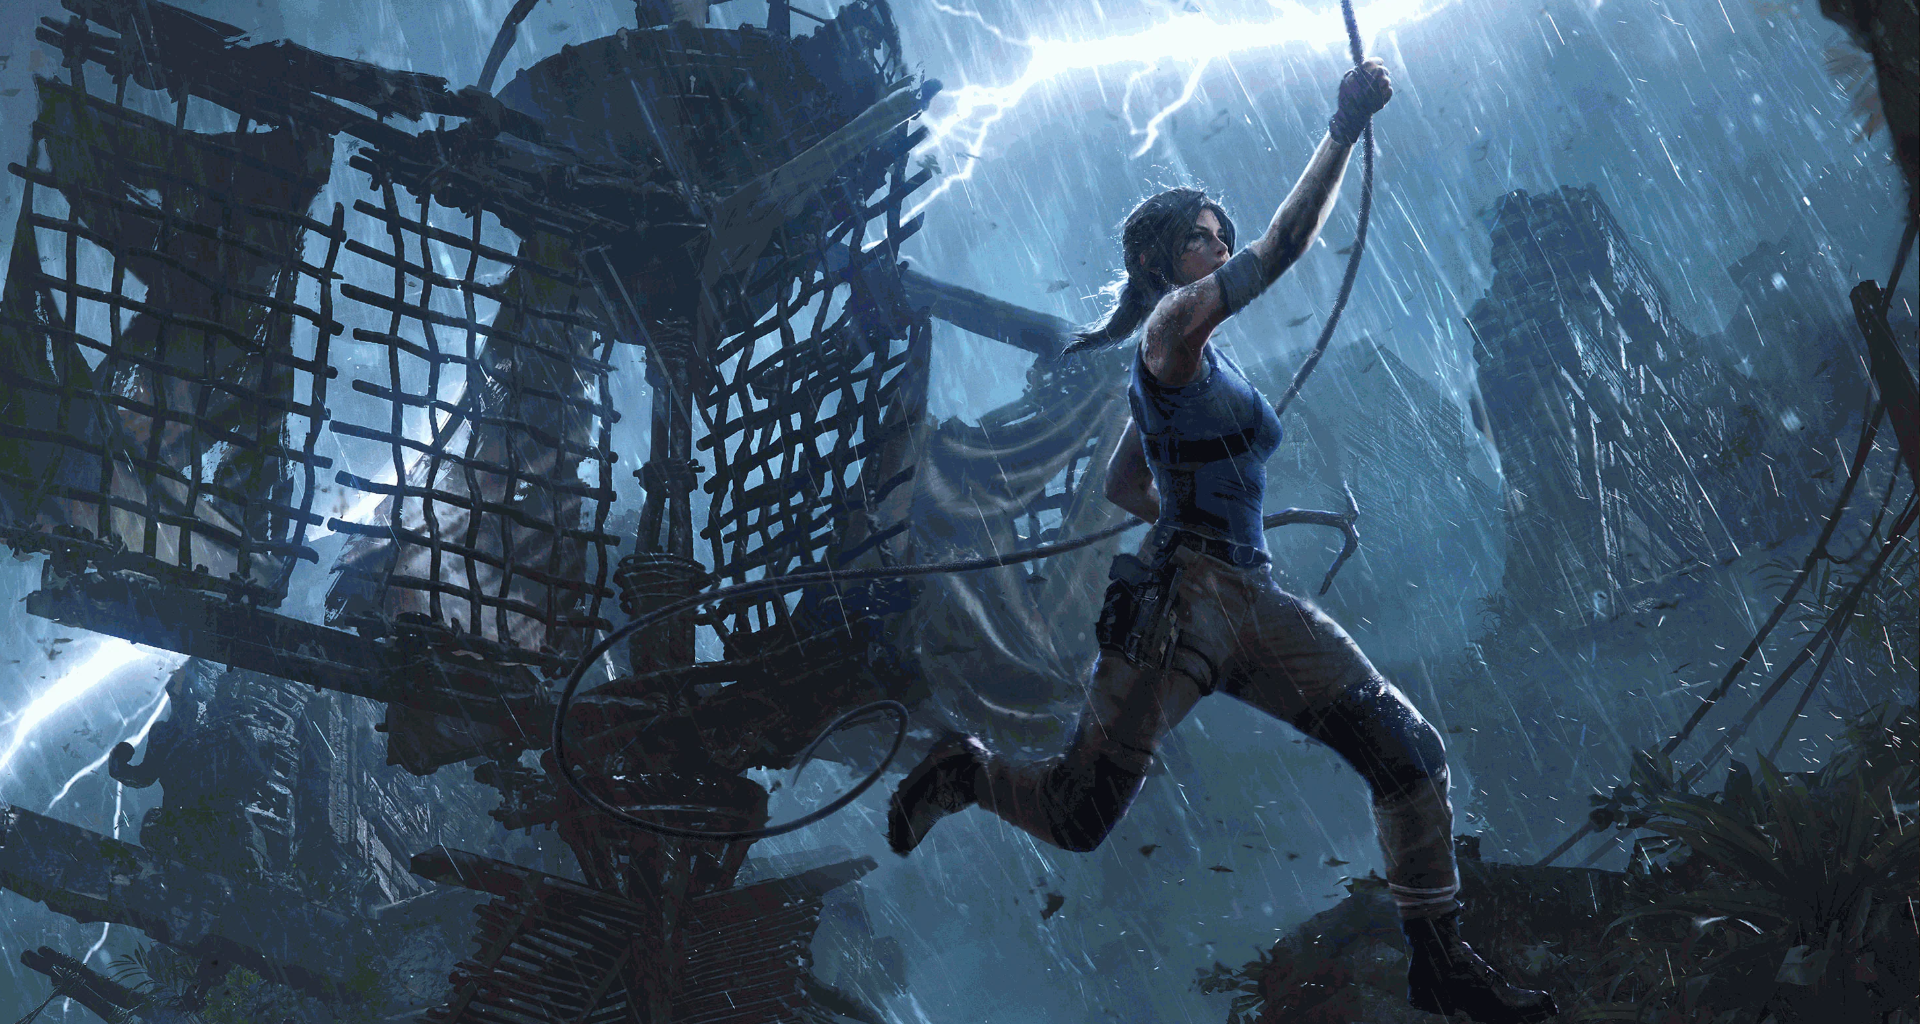 Tomb Raider vai ganhar universo conectado com filme, série de TV e